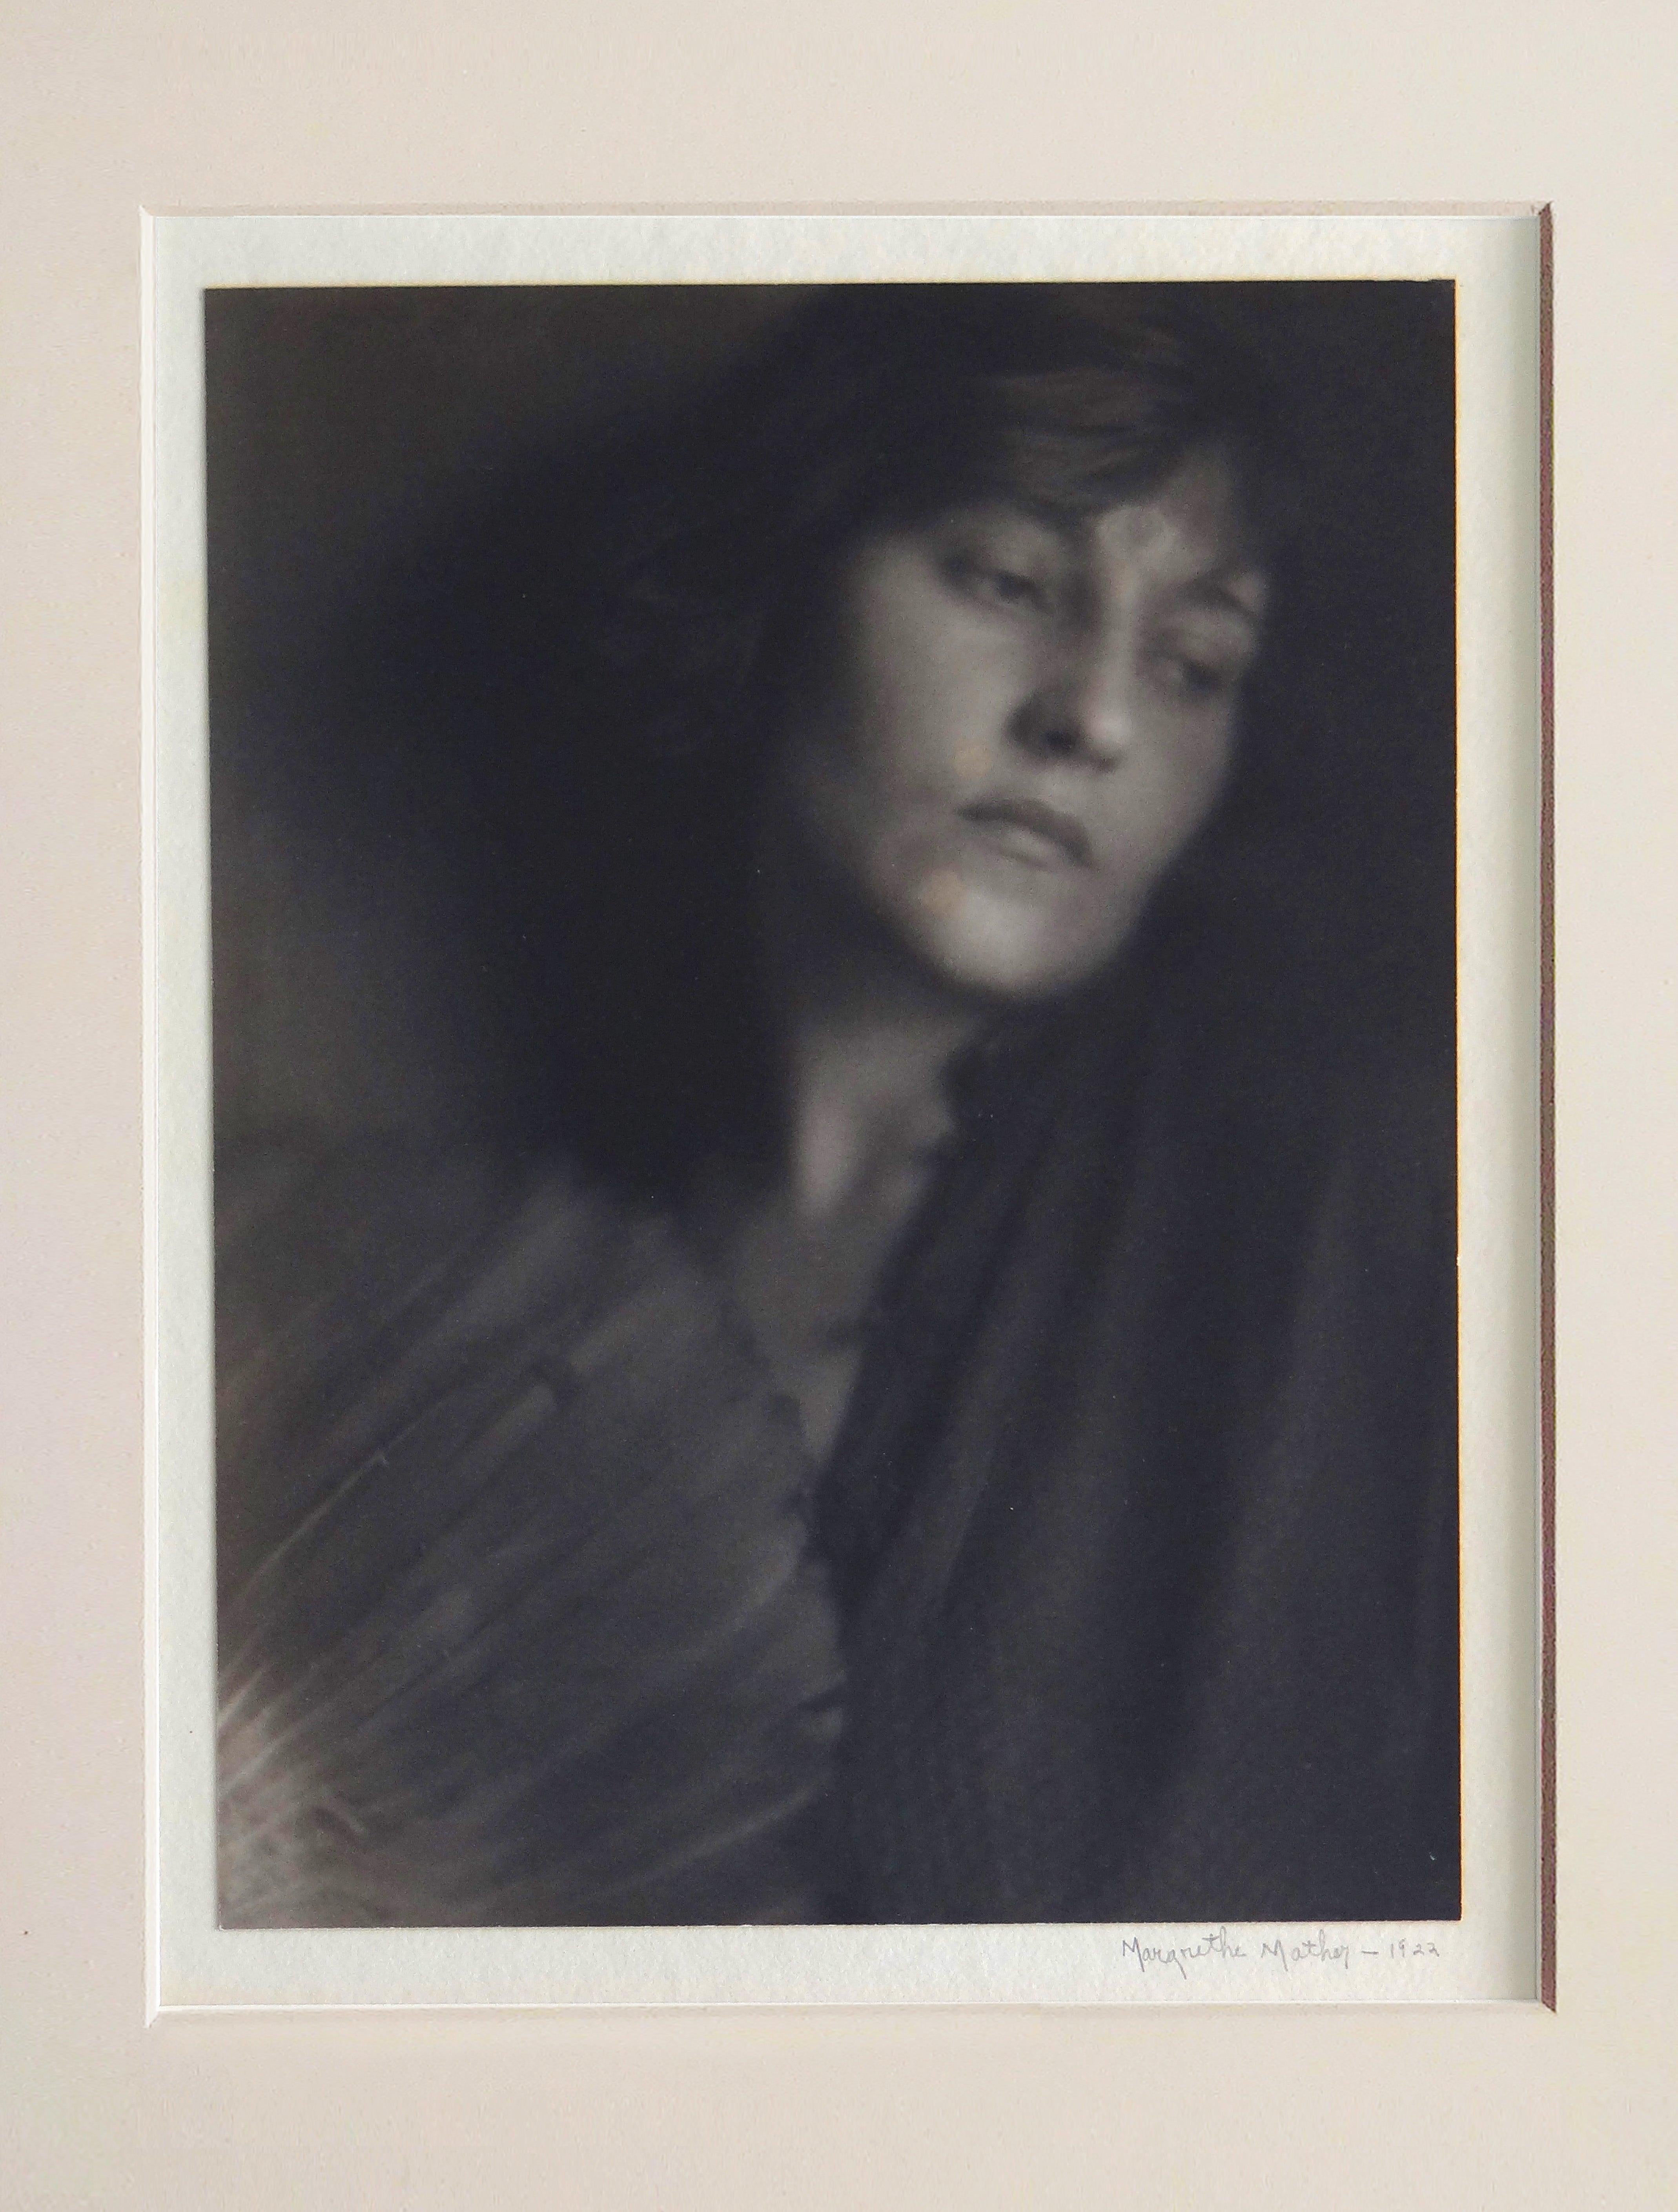 Portrait sans titre, photographie vintage de Margrethe Mather 2